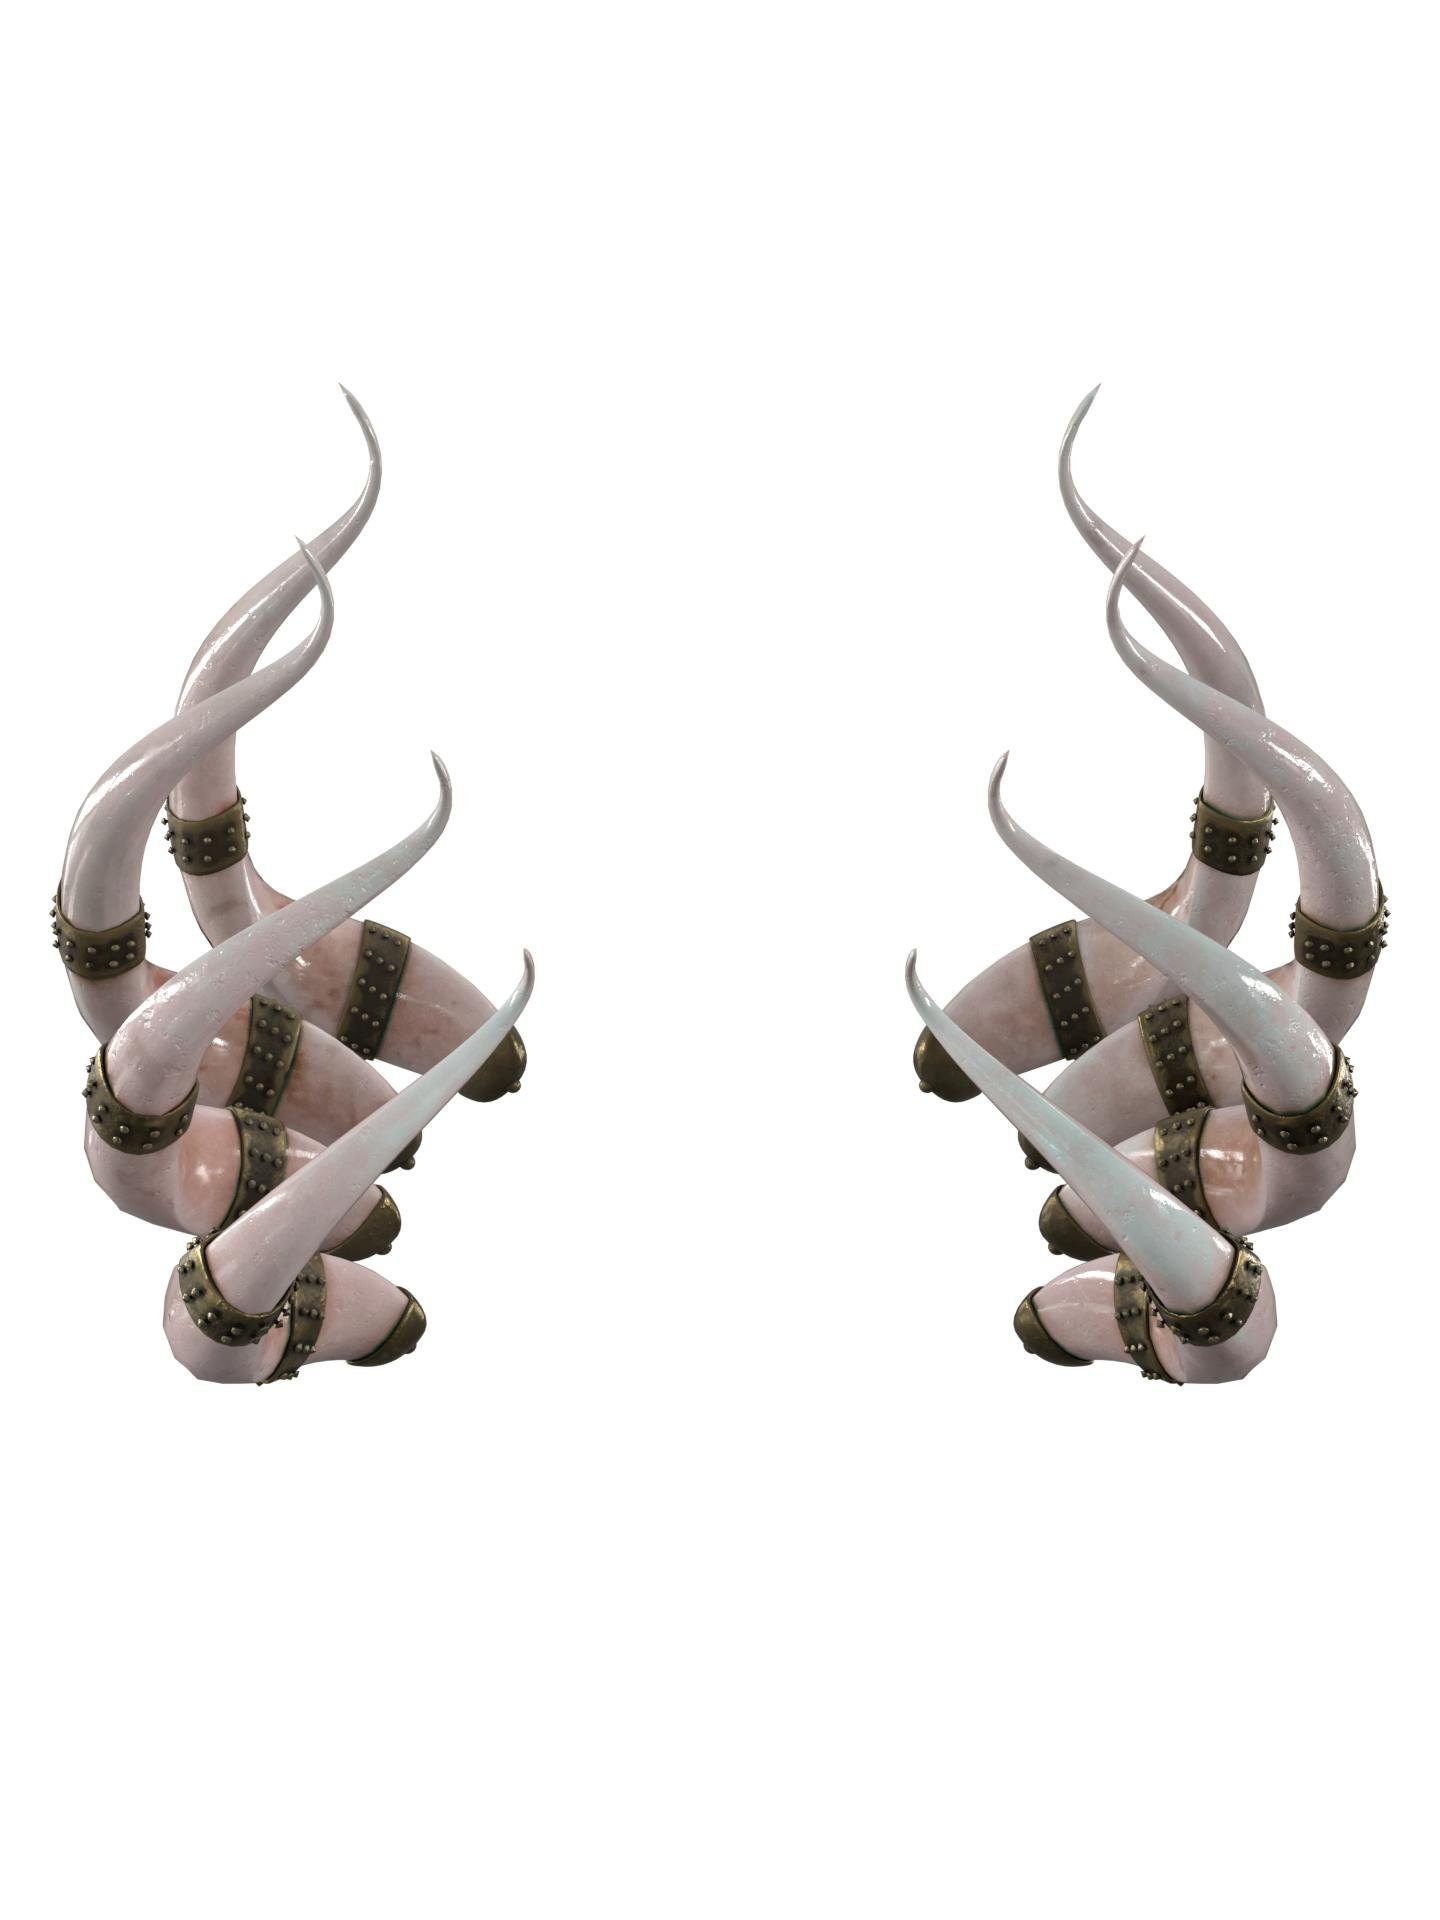 Сrown.horns by CINPHUL